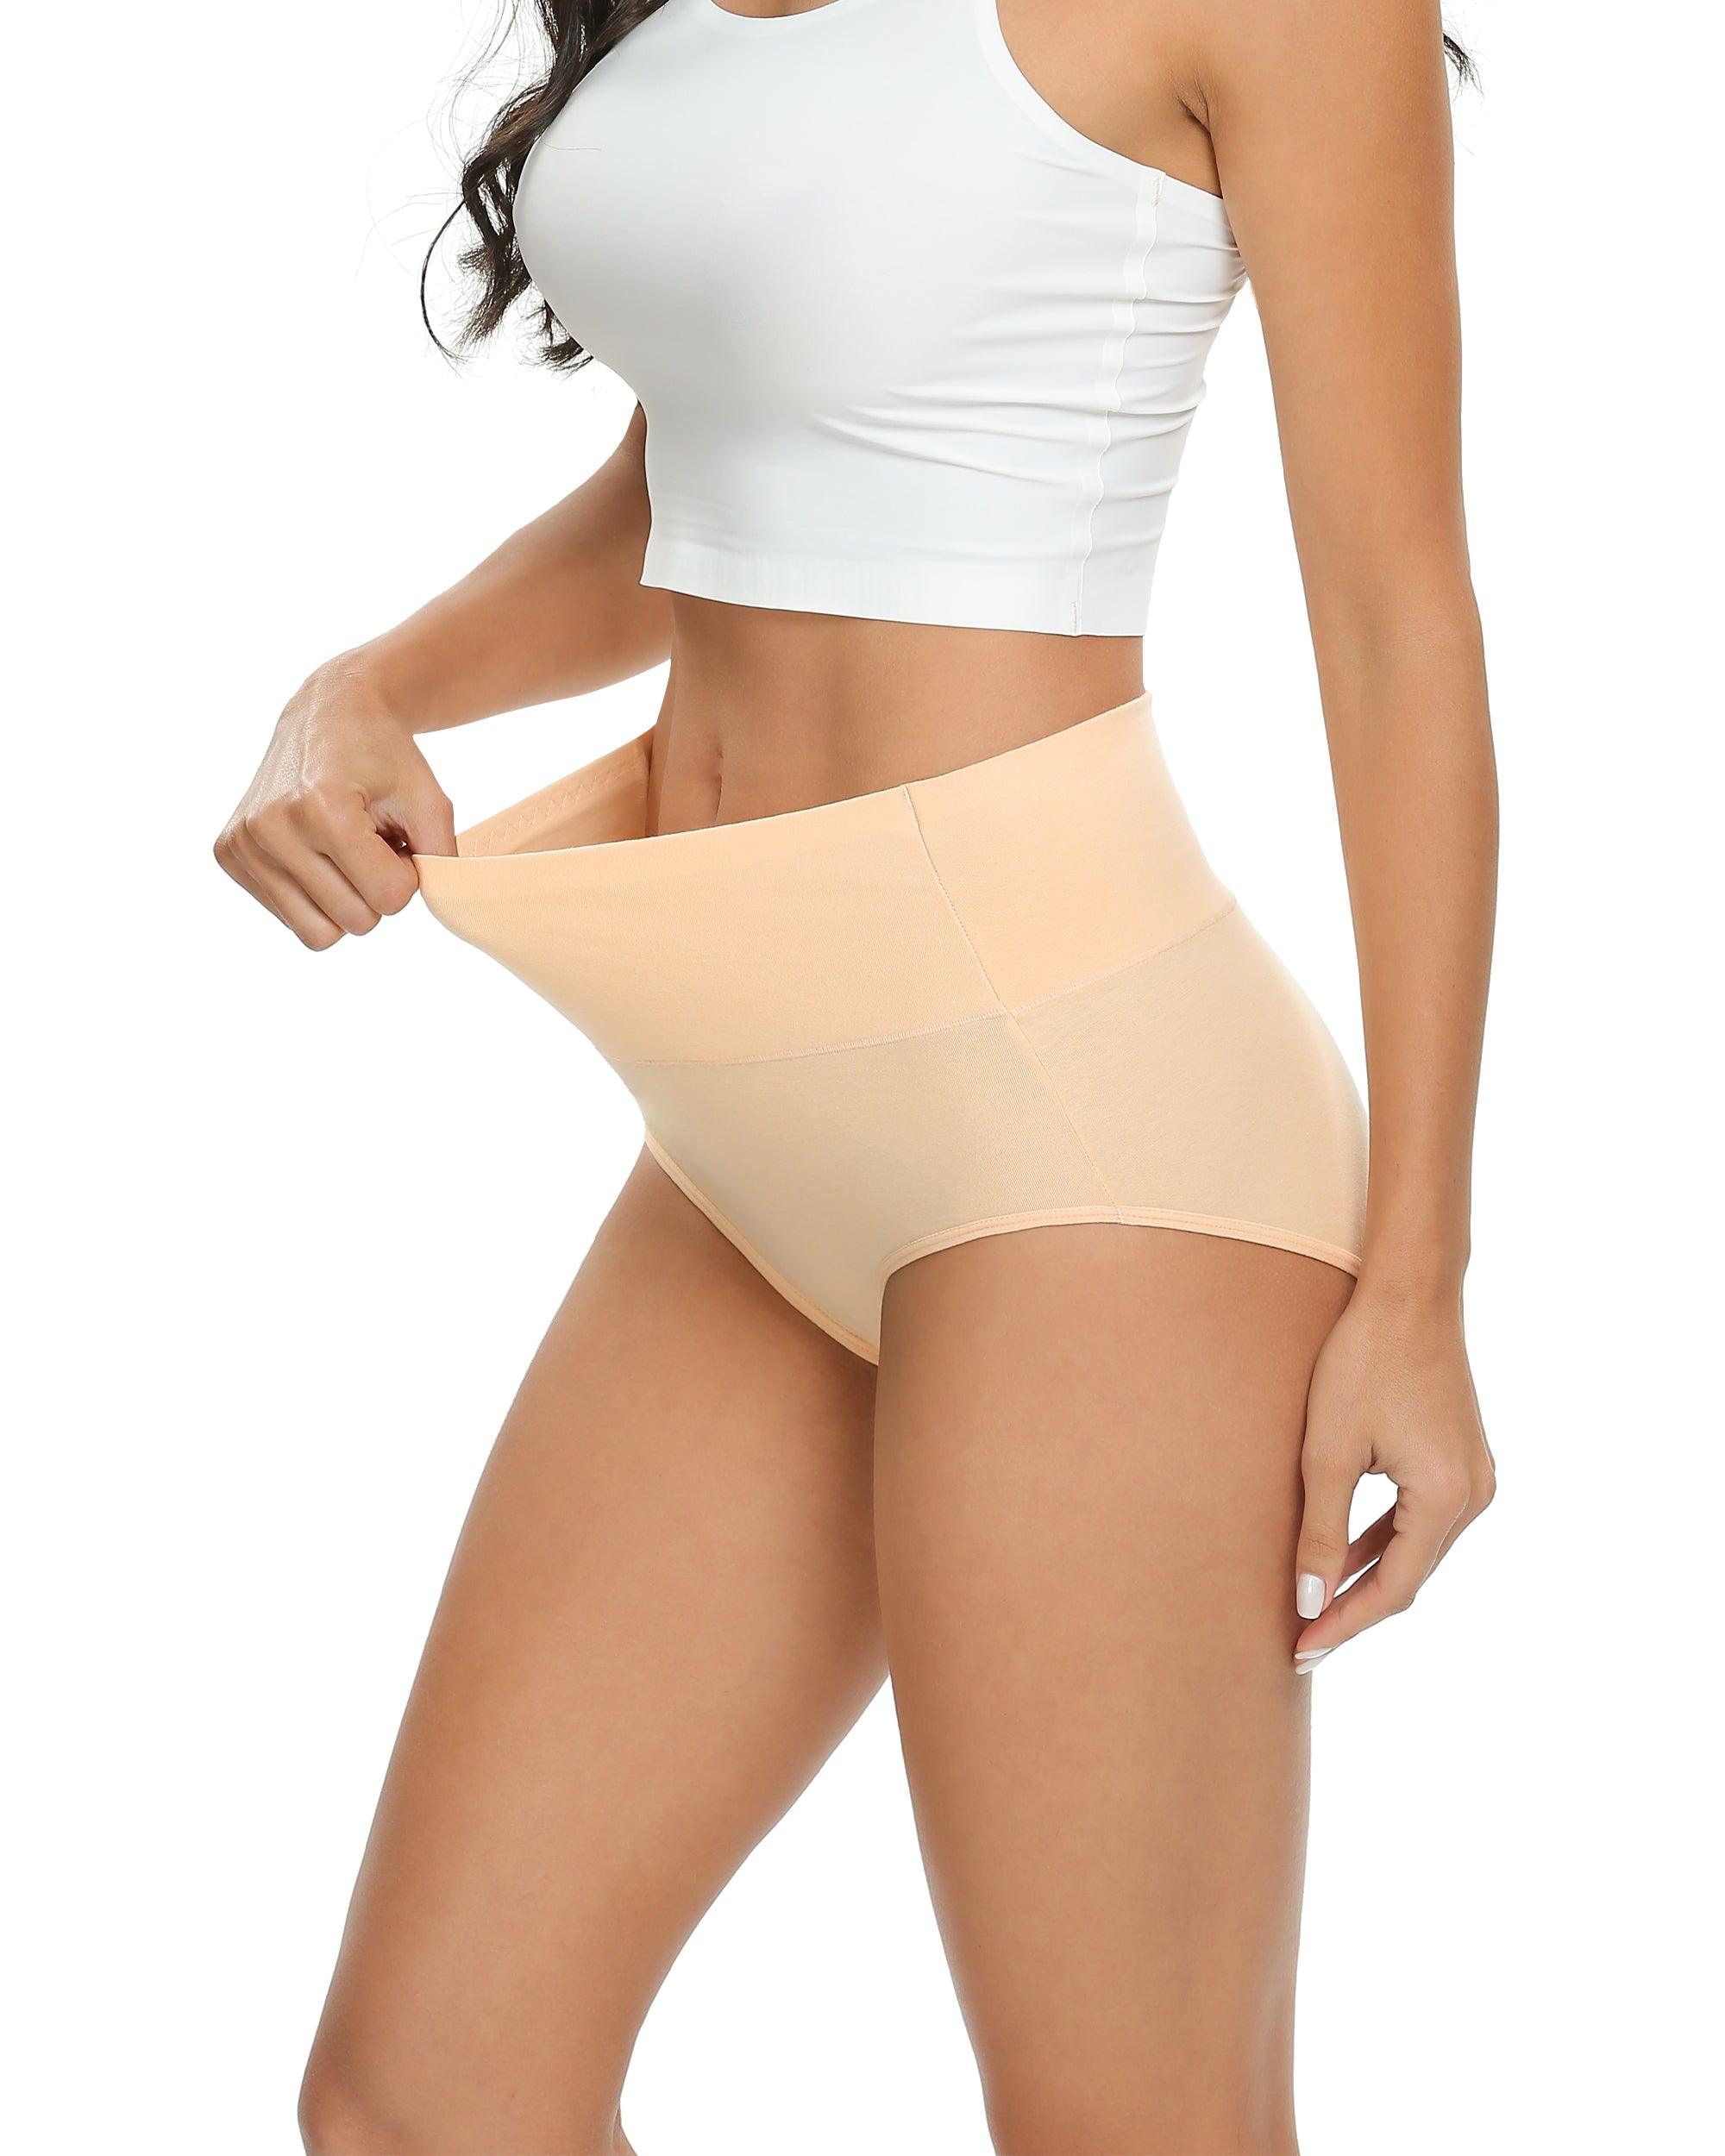 Altheanray Womens Underwear Cotton Briefs - High Waist Tummy Control  Panties for Women Postpartum Underwear Soft